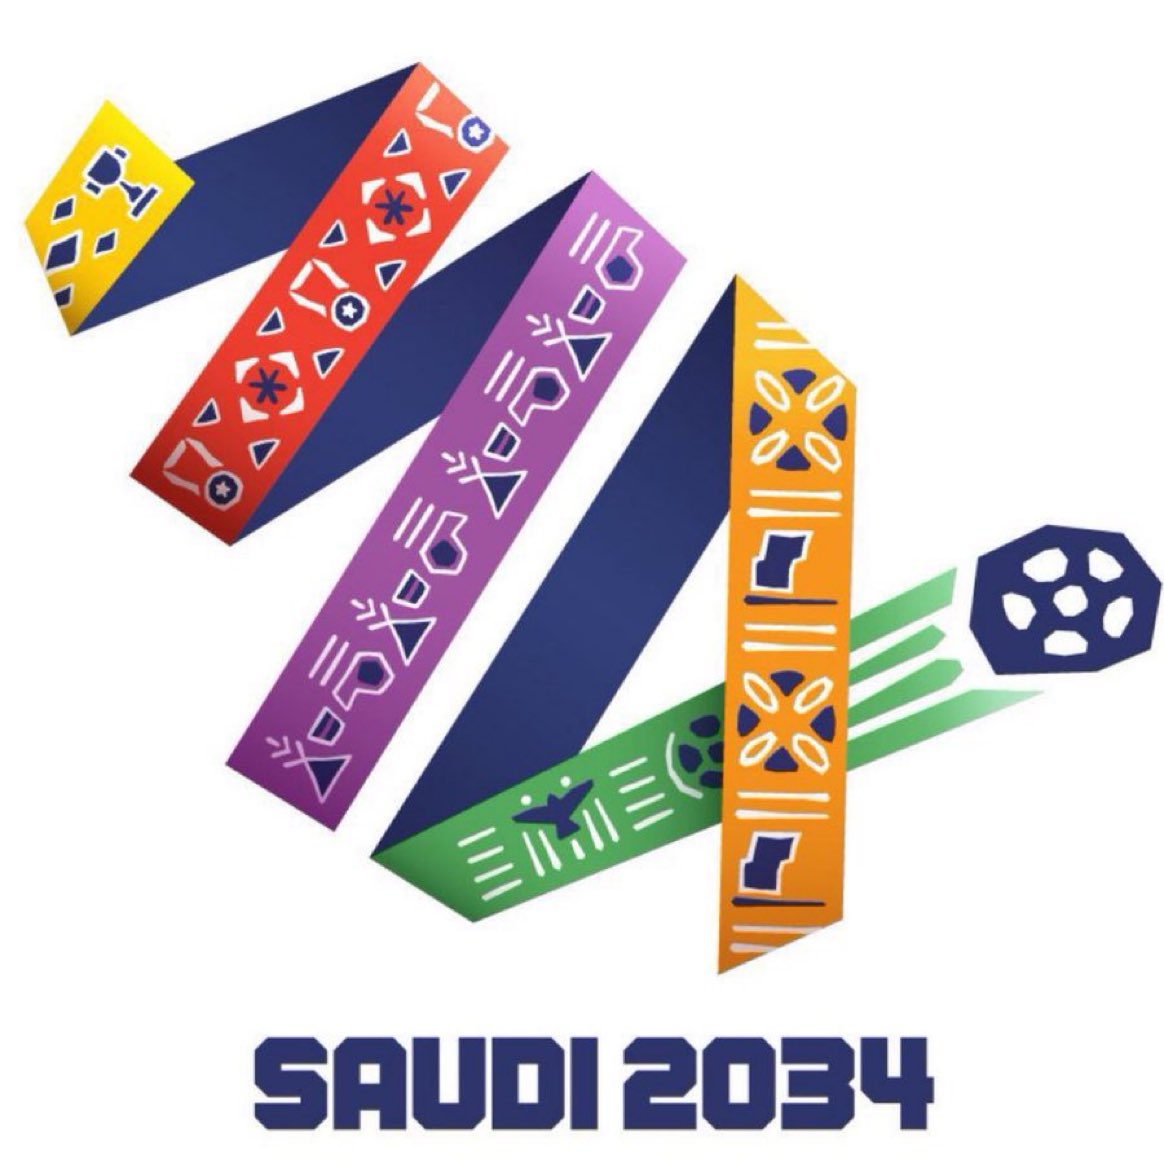 🔵🚨🚨🚨🚨🚨🚨🚨

المدن التي ستستضيف كأس العالم 2034 في المملكة العربية السعودية :

• مدينة الرياض
• مدينة جدة
• مدينة الدمام
• مدينة نيوم
• مدينة أبها
• مدينة القدية

#السعودية2034 | #Saudi2034 | #معًا_ننمو | #ترشح_السعودية2034